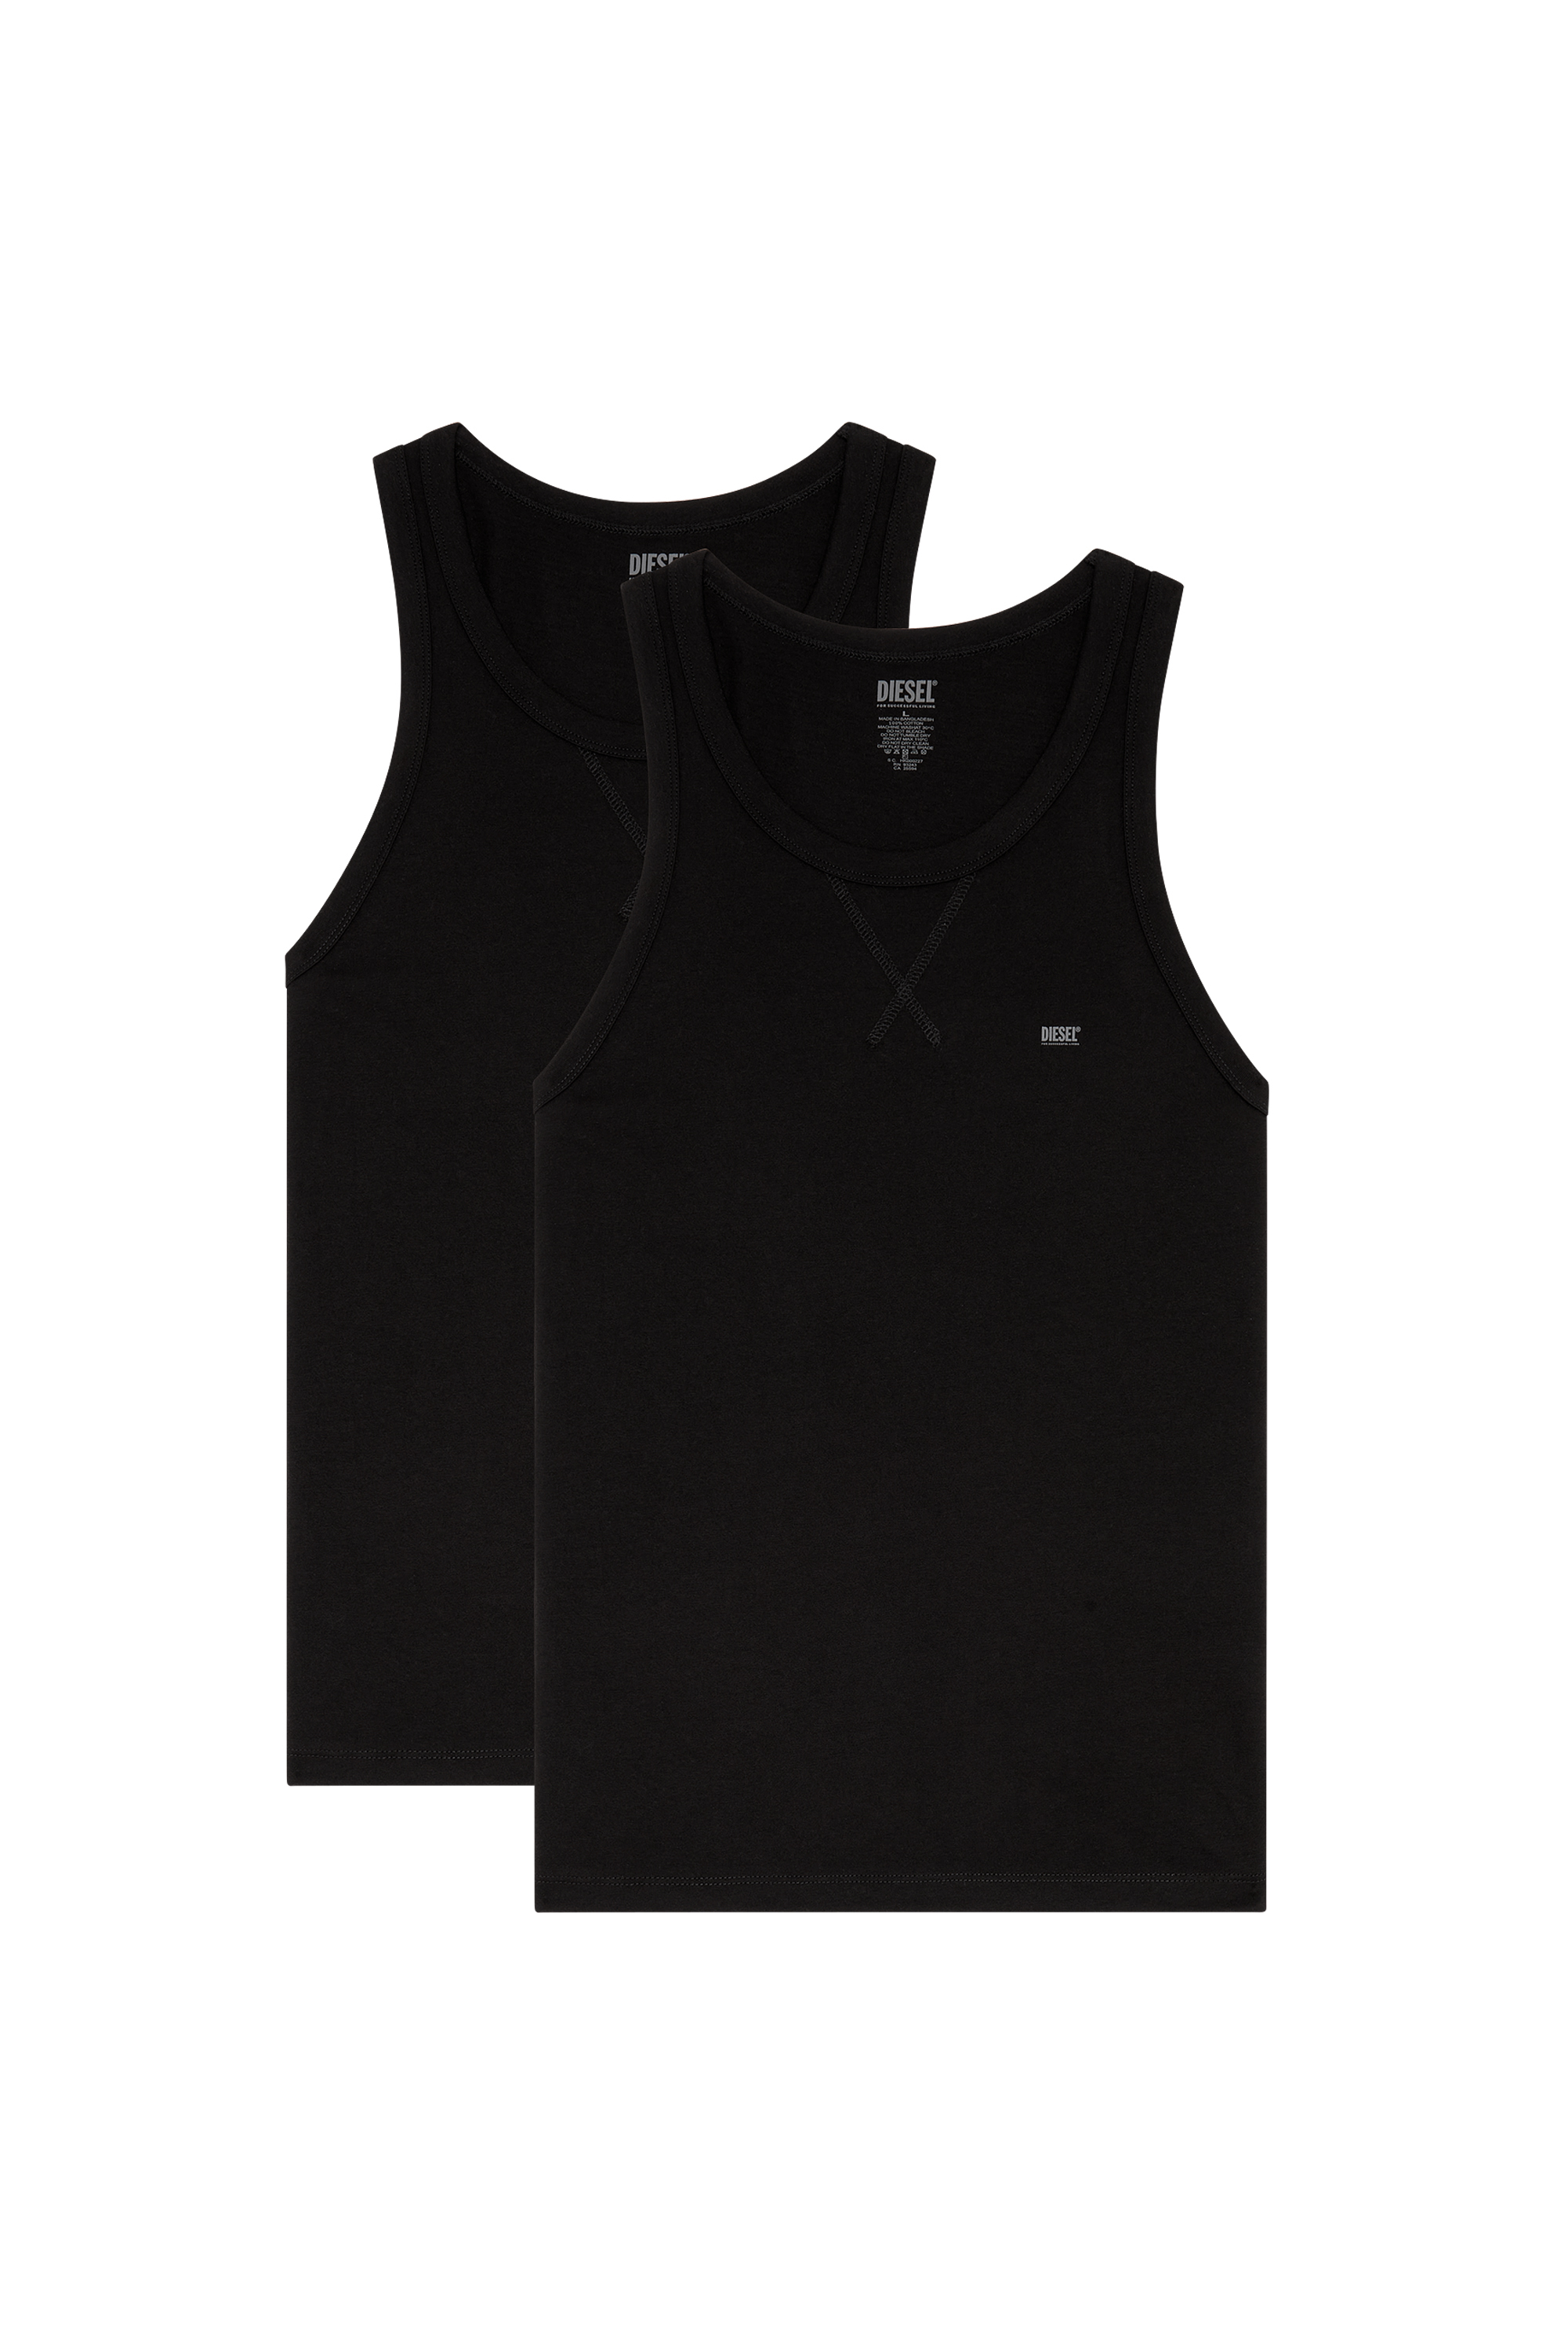 Diesel - UMTK-WALTYTWOPACK, Hombre Paquete de dos camisetas de tirantes de algodón in Negro - Image 1